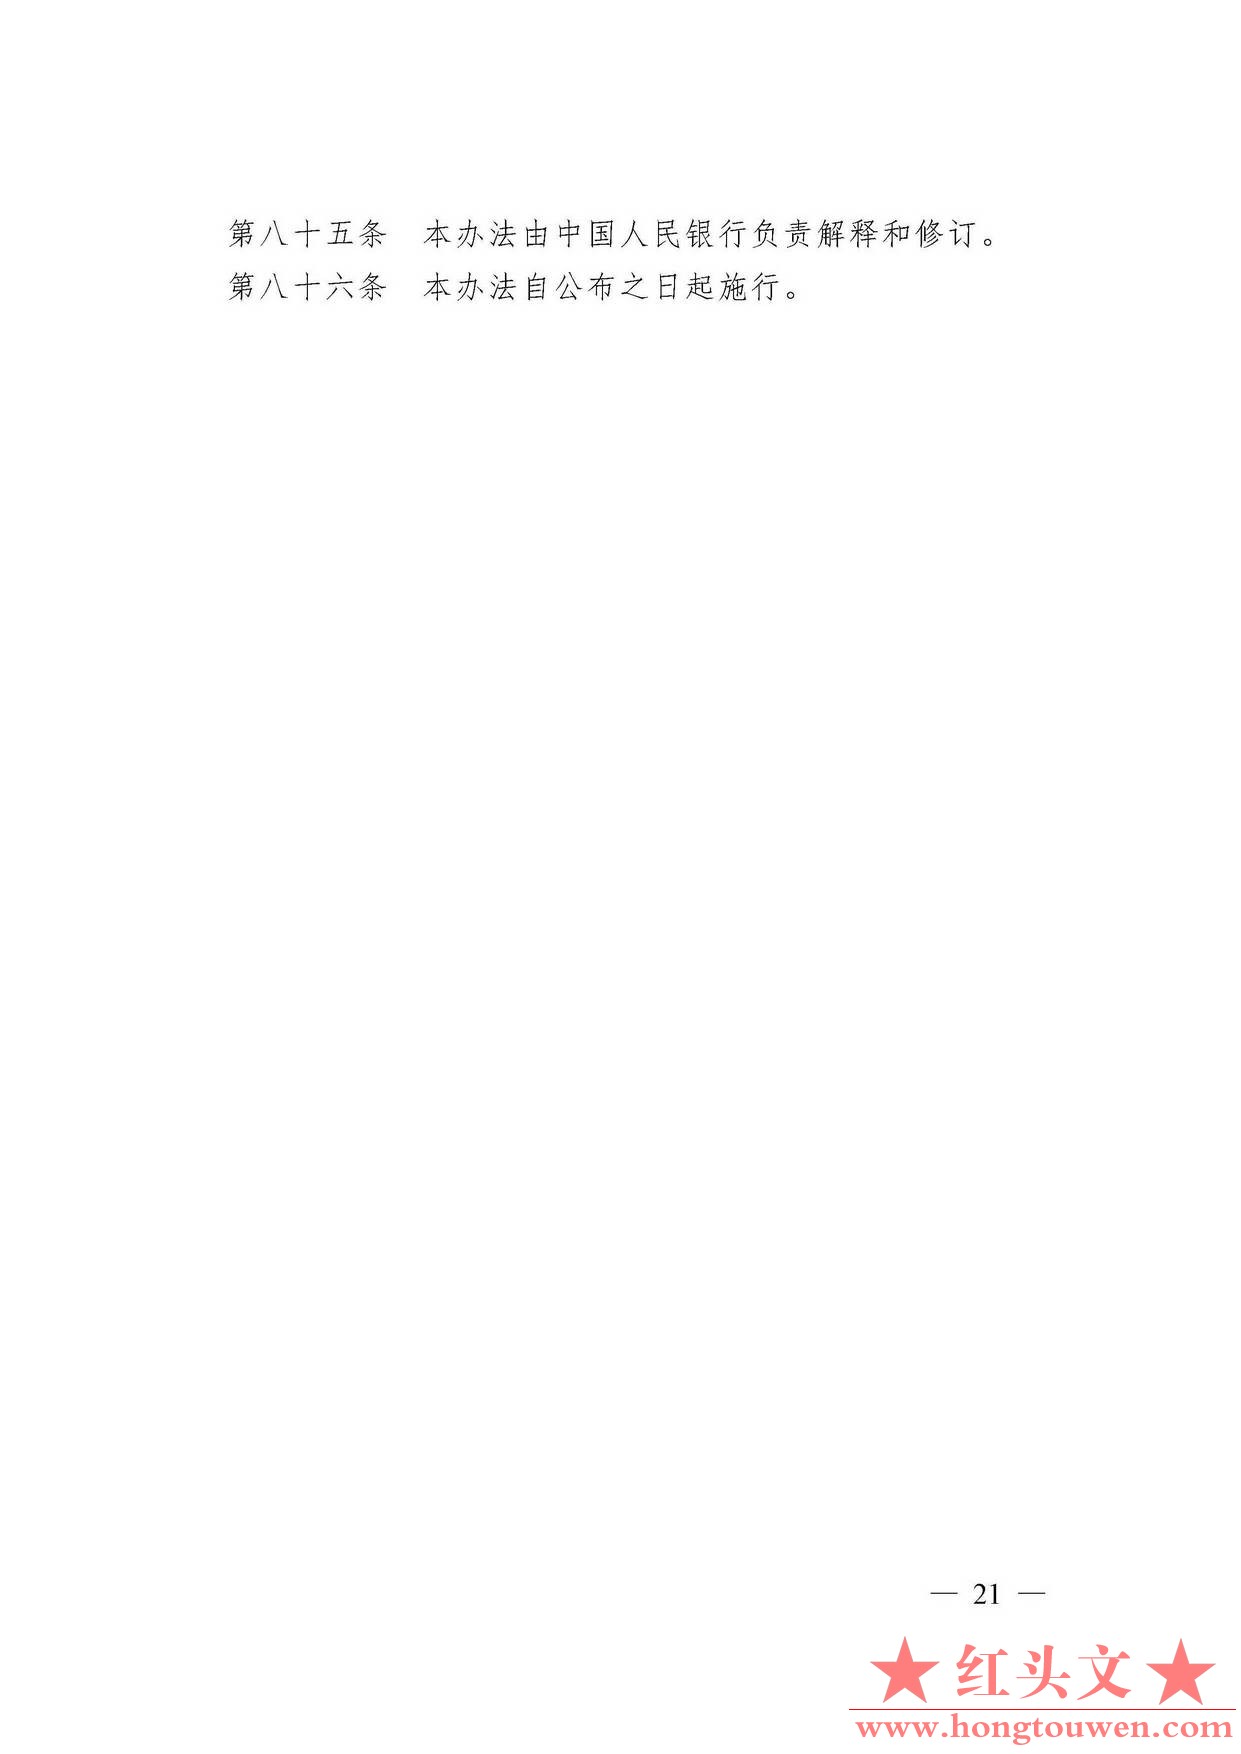 中国人民银行令[2009]2号-电子商业汇票管理办法_页面_21.jpg